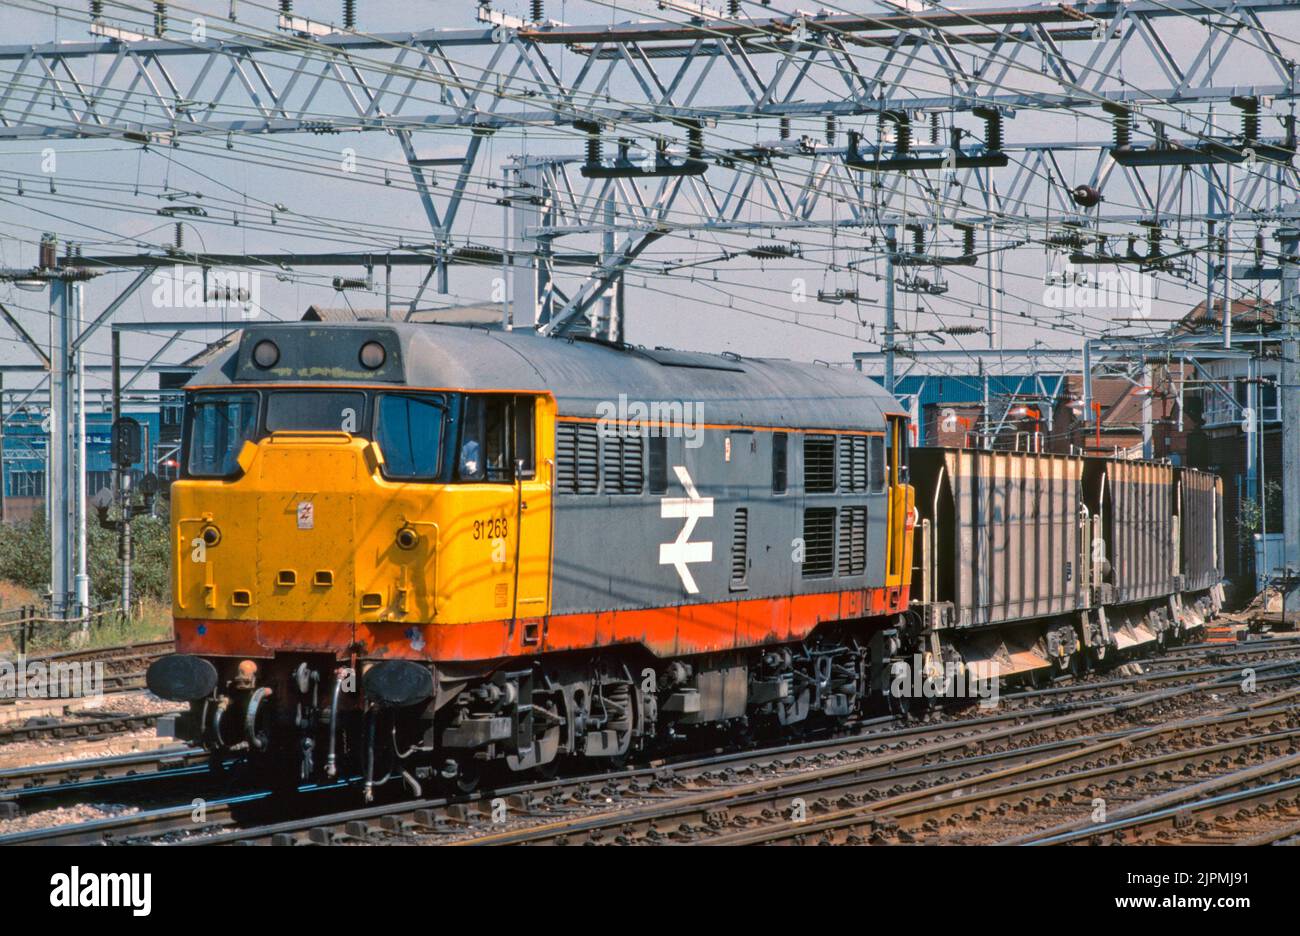 Une locomotive diesel de classe 31 numéro 31263 qui travaille un train de trémies de ballast vides à Stratford, dans l'est de Londres, le 8 août 1990. Banque D'Images